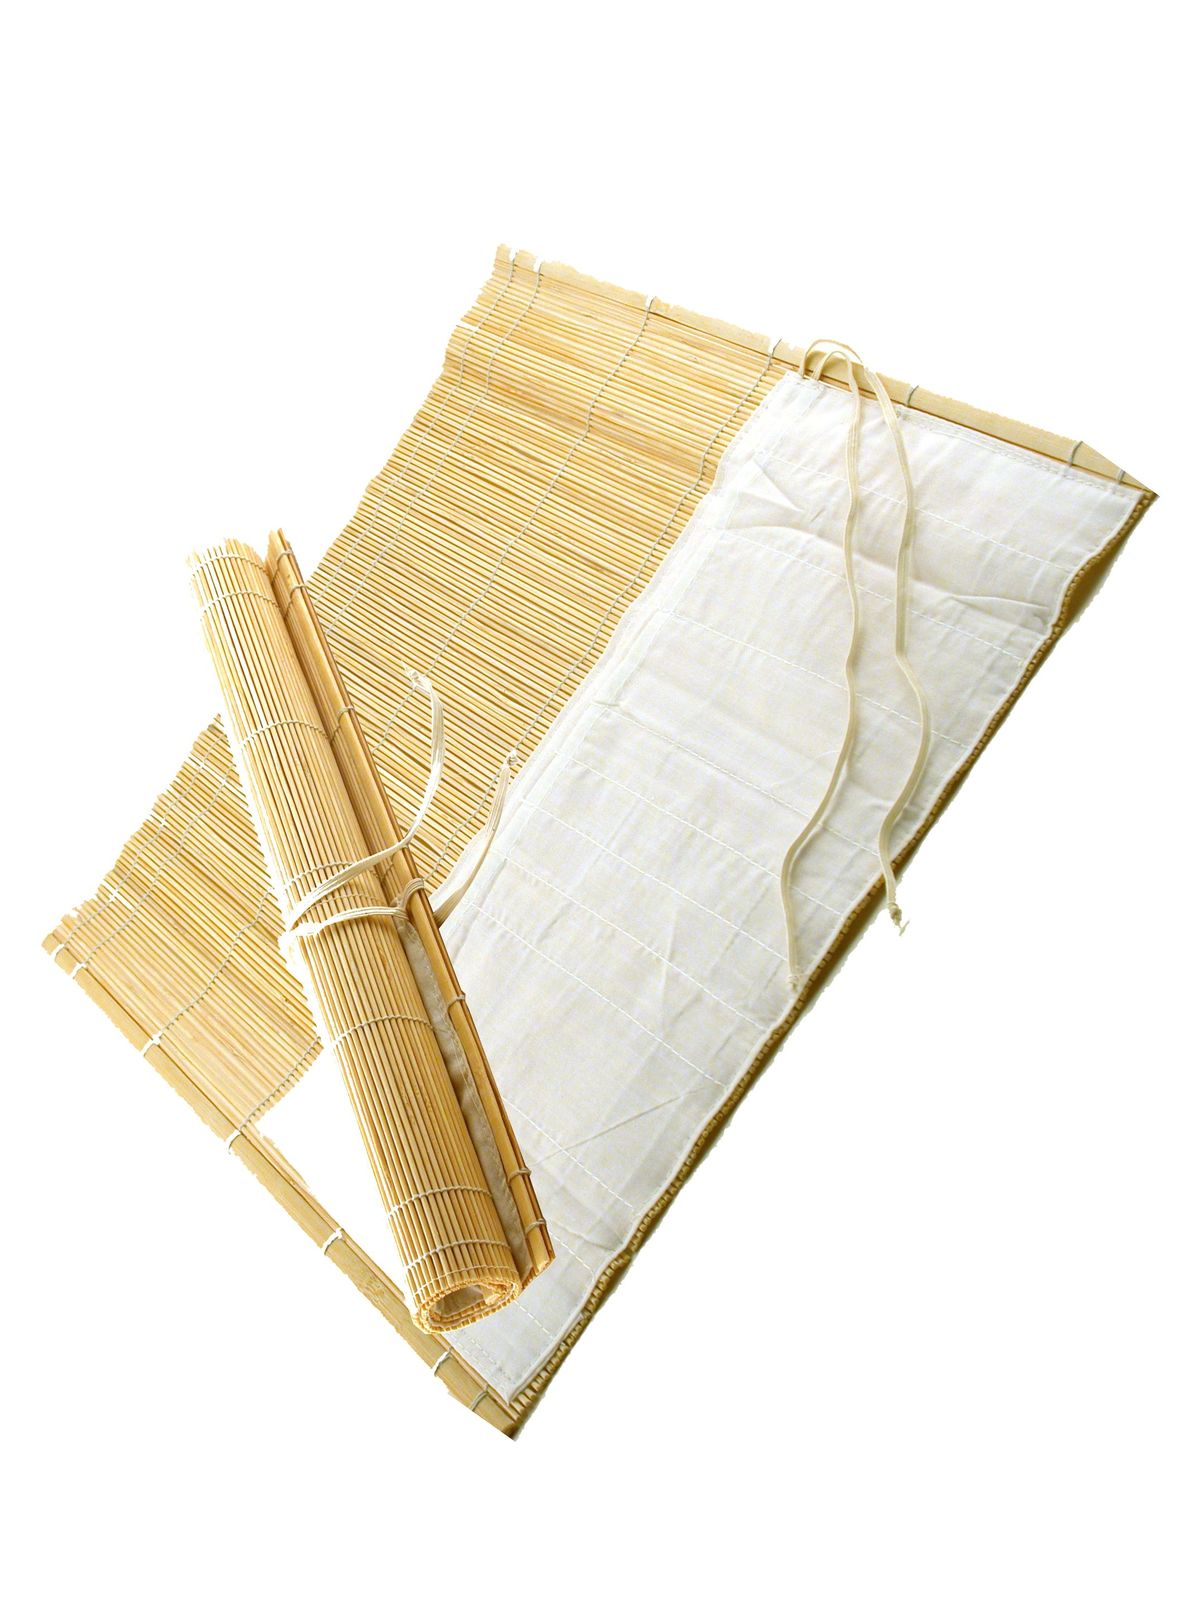 Bamboo Brush Mat Bamboo Brush Holder